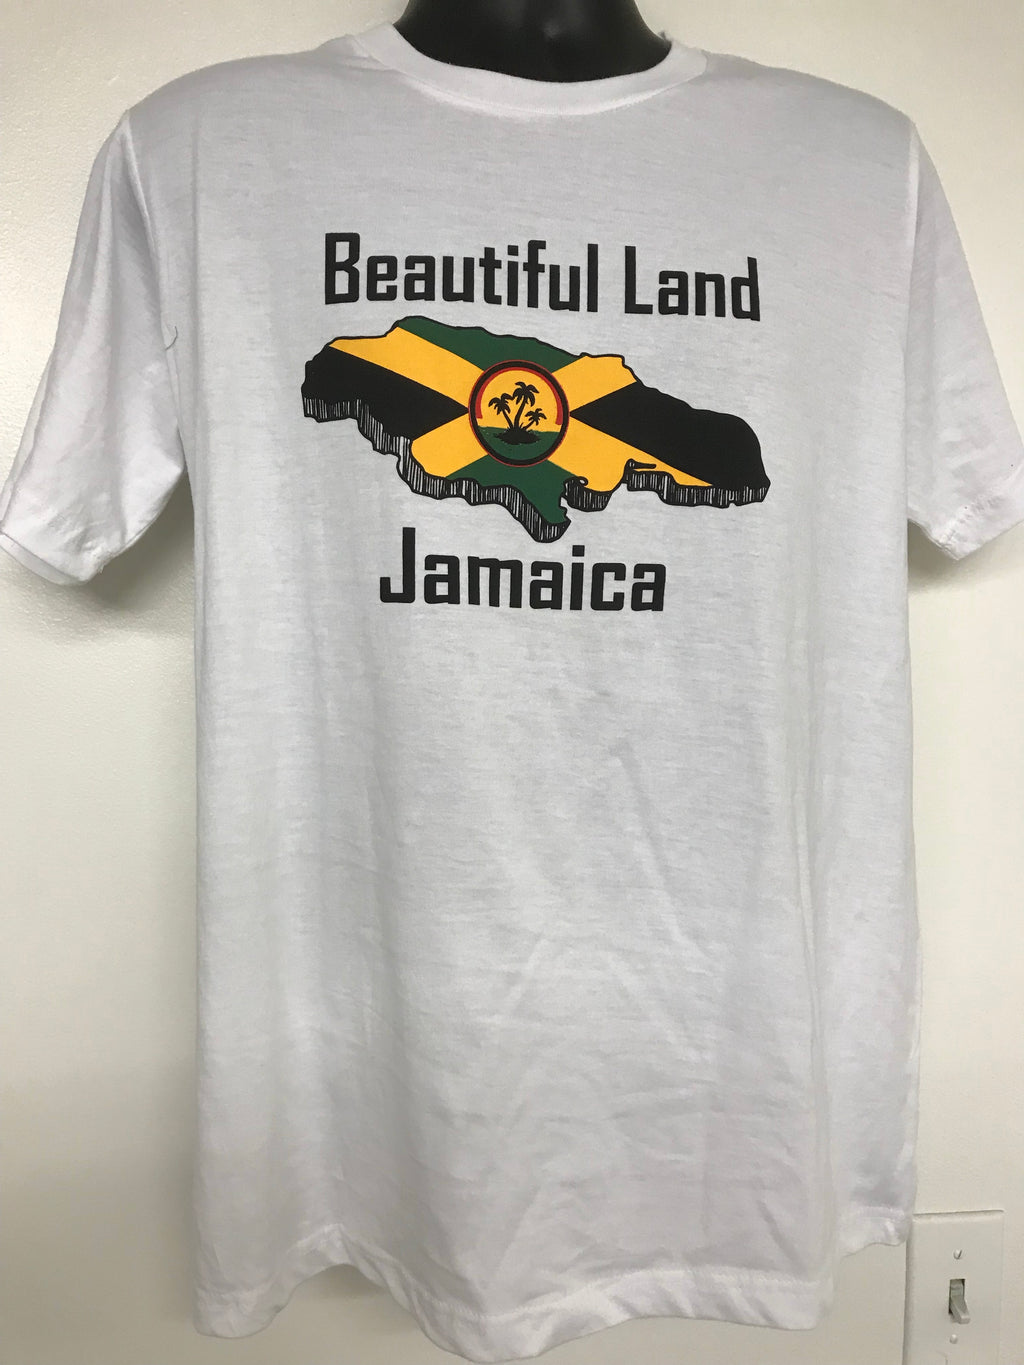 Jamaican men’s T-shirt. Beautiful land Jamaica.